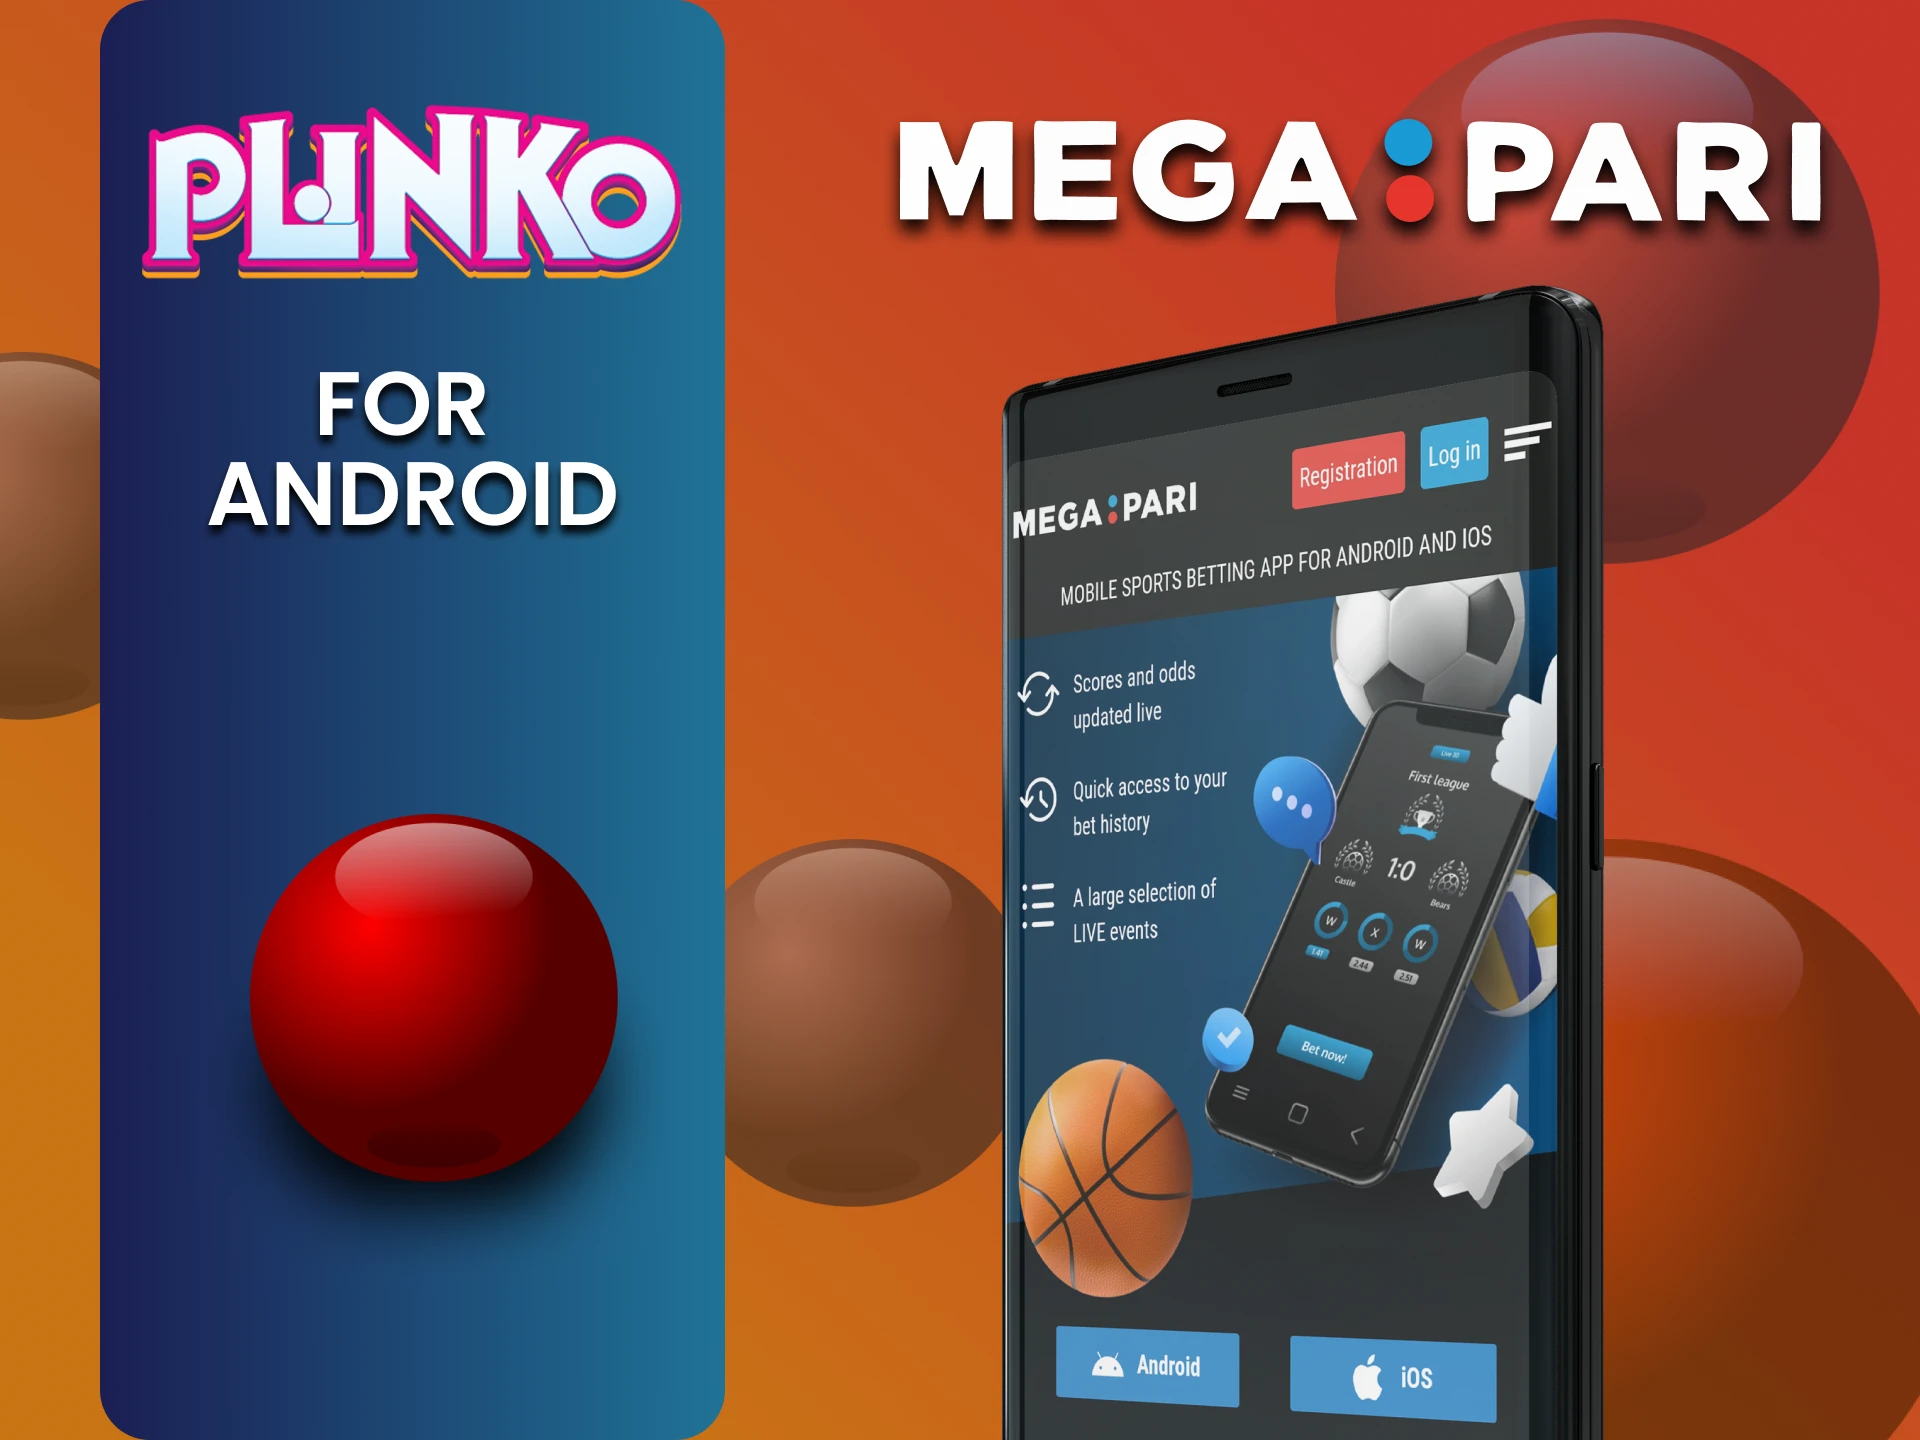 Install the Megapari app on Android to play Plinko.